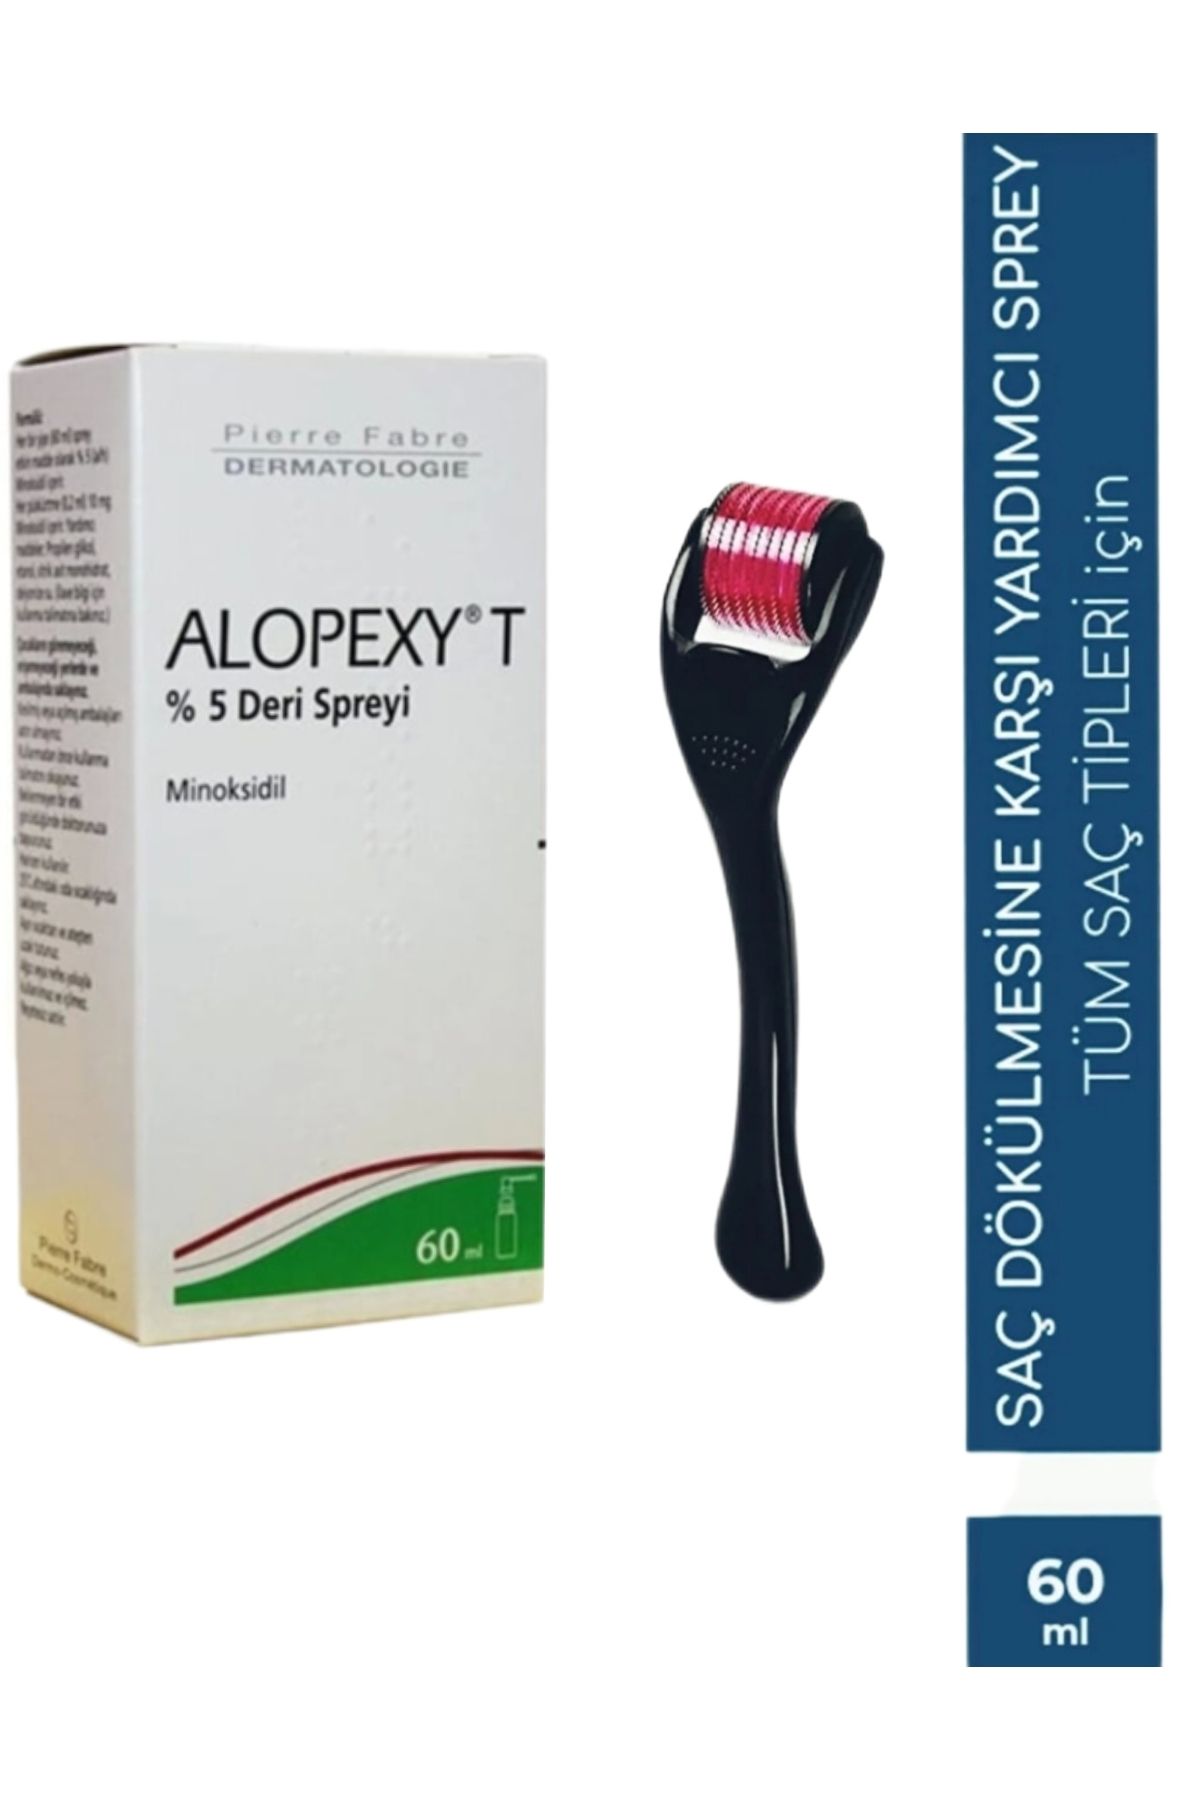 Pierre Fabre Alopex T %5 Deri Spreyi + Saç Çıkarma Tarağı Titanyum Roller